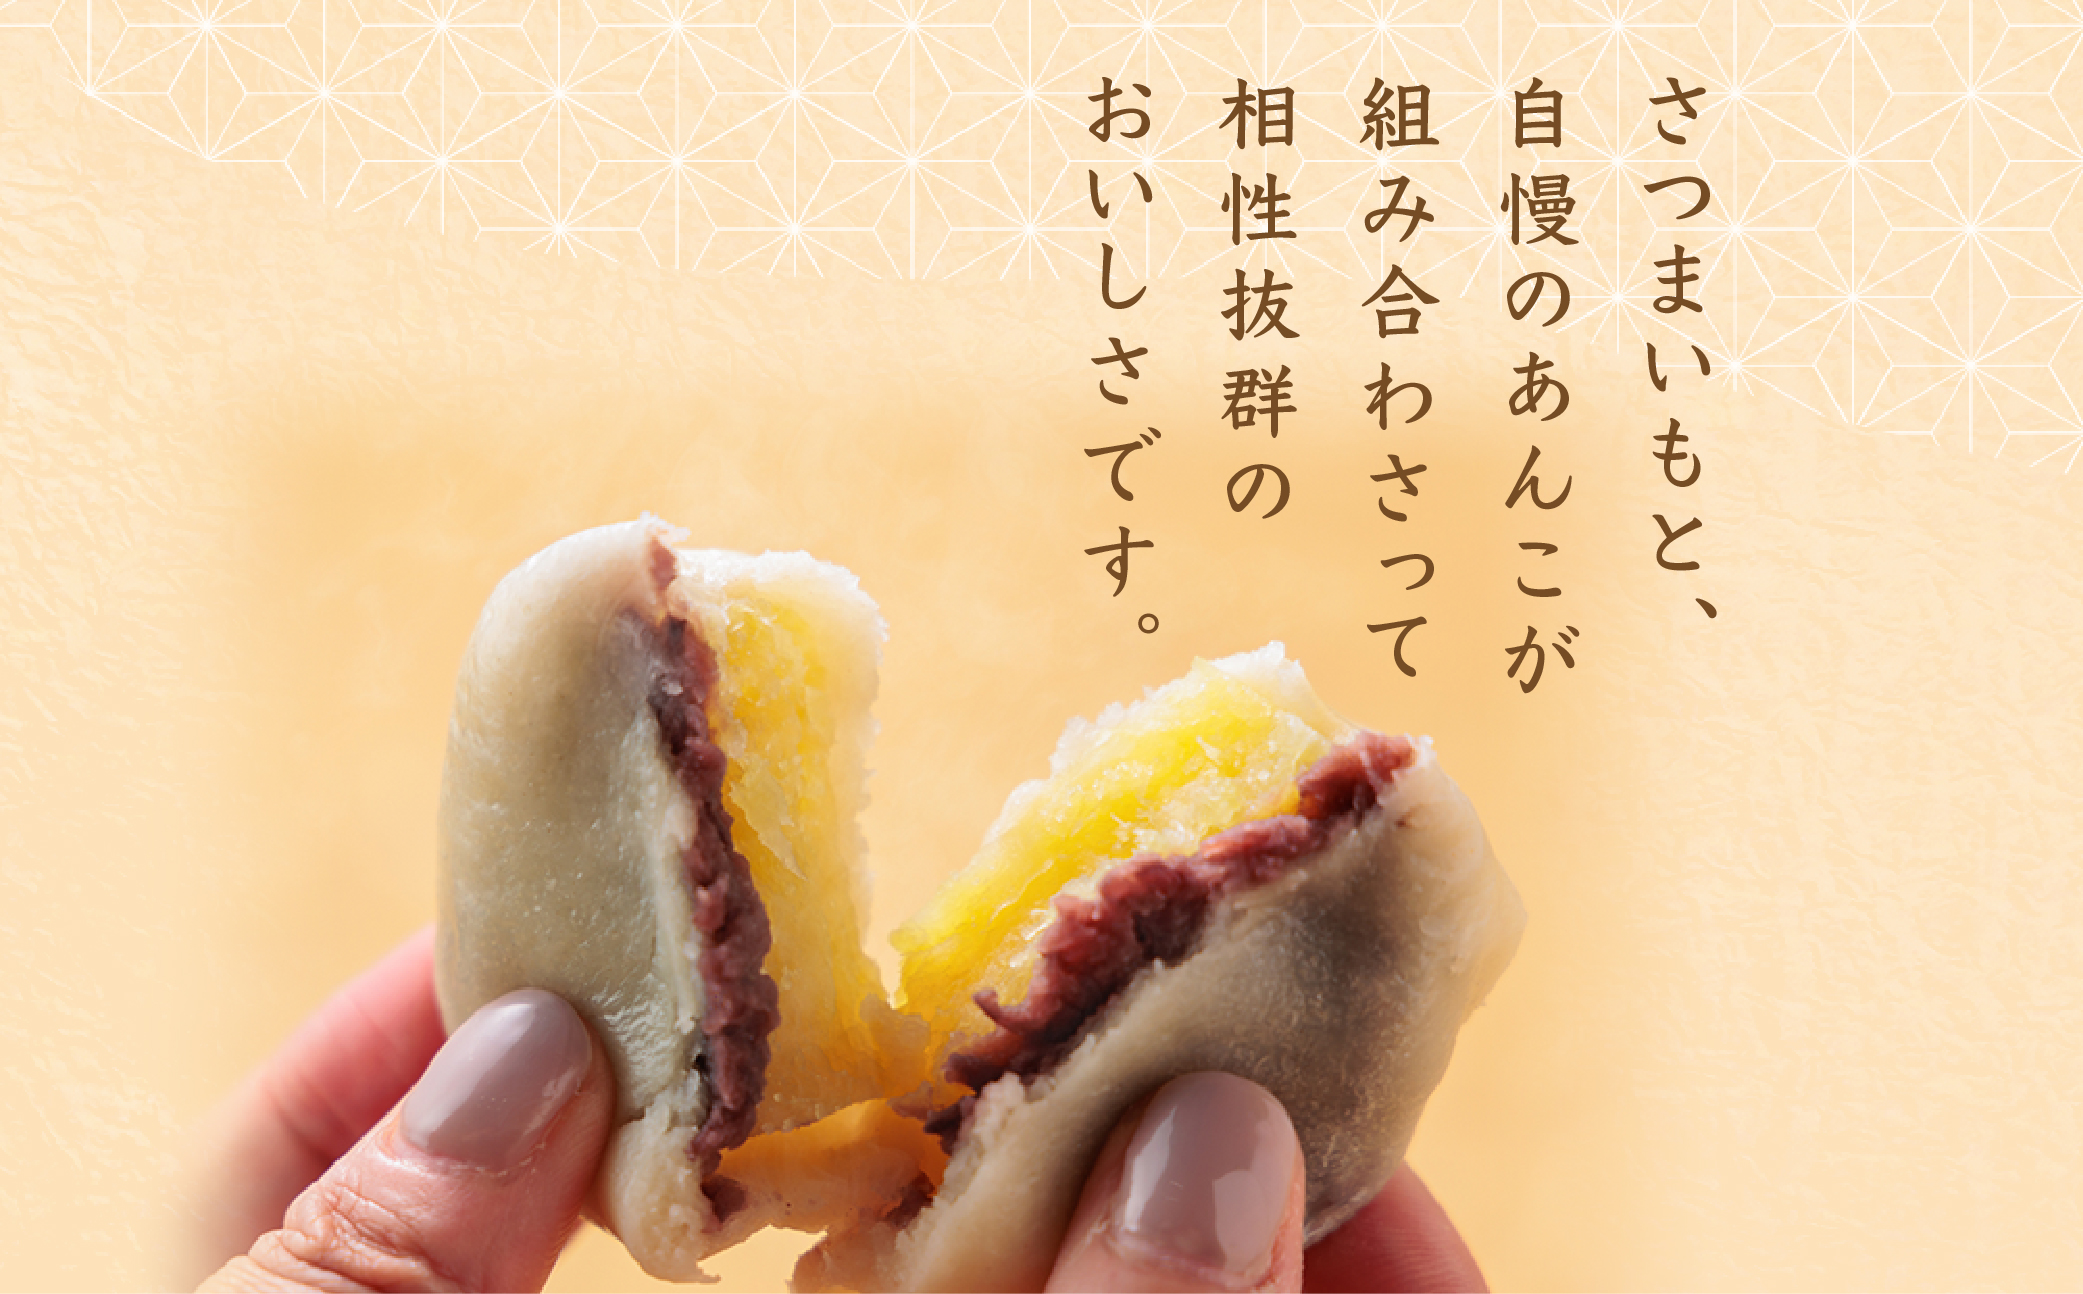 いきなりだんご 20個セット  冷凍 保存可 郷土菓子 スイーツ お菓子 人気 美味しい  セット 詰め合わせ 熊本 阿蘇